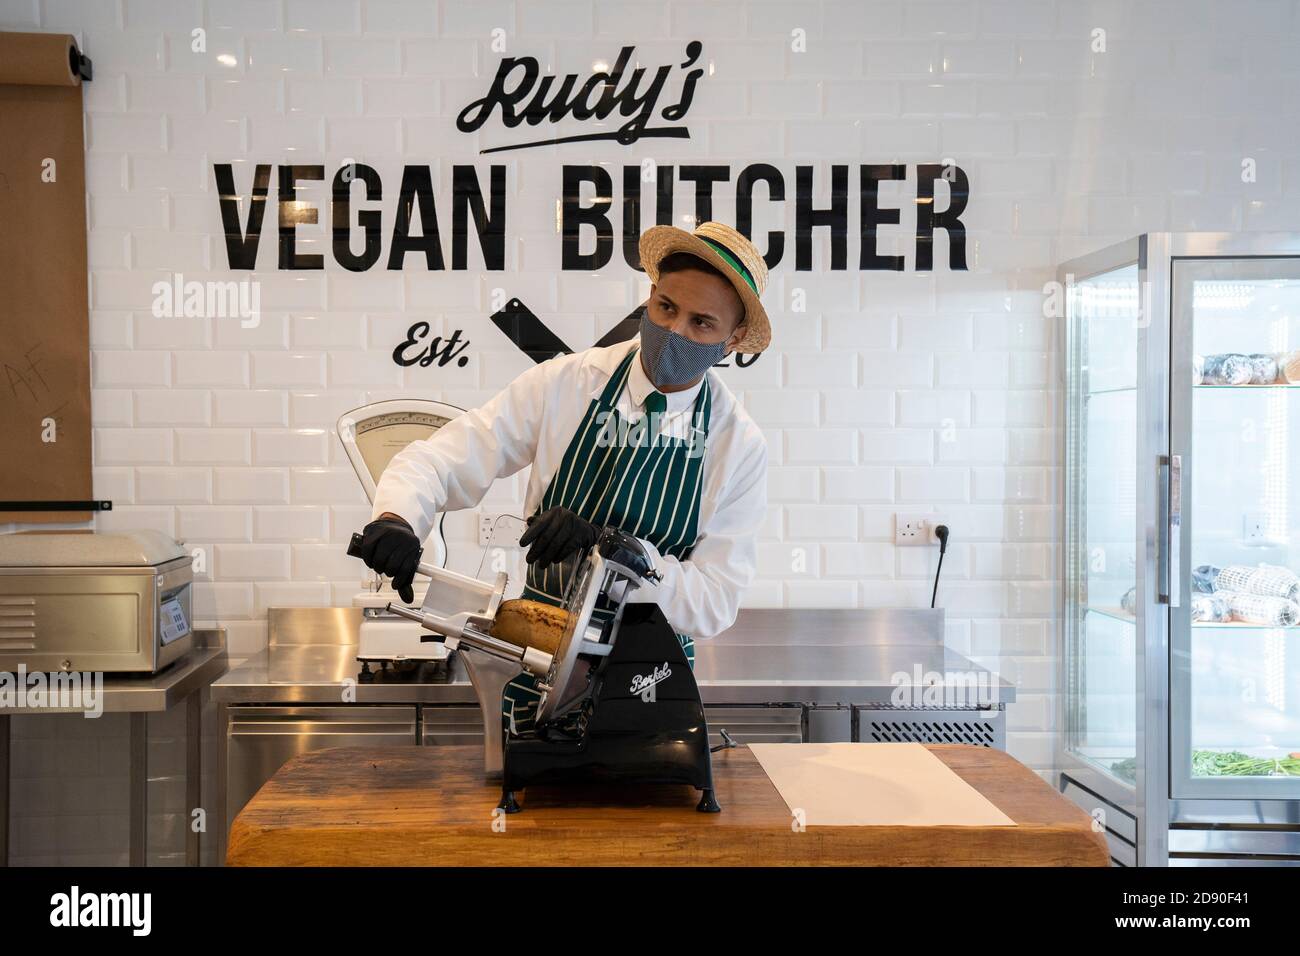 Rudys Vega Butcher Delicatessen ouvre à Islington Londres. L'image montre le « boucher » en train de faire de la viande de substitution, en portant un masque facial. Banque D'Images